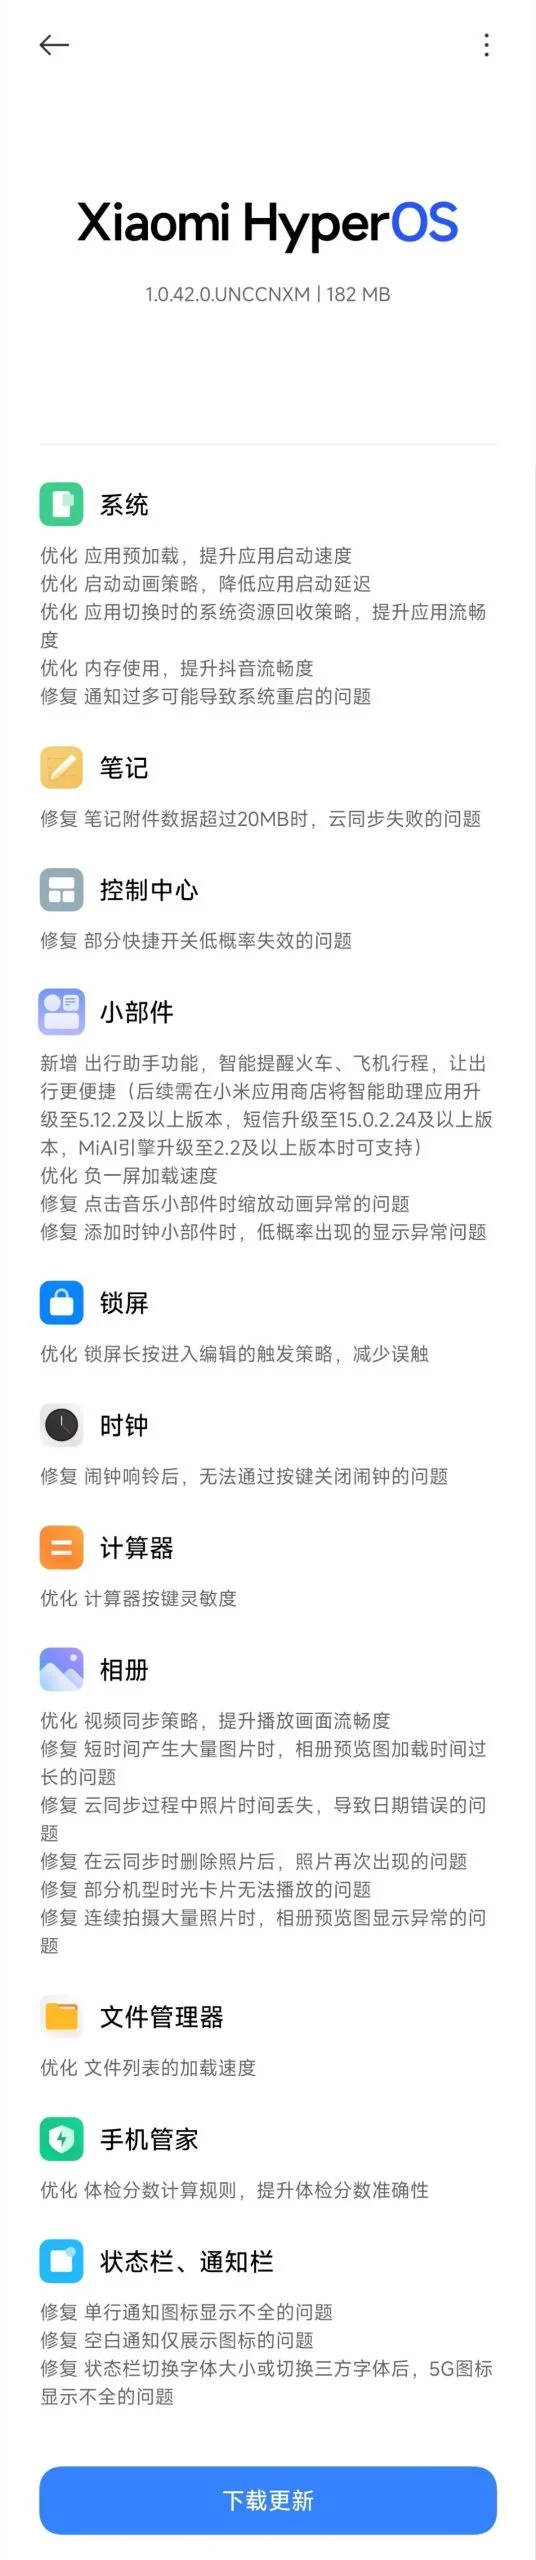 (Fuente de la imagen: Xiaomi vía Gizmochina)